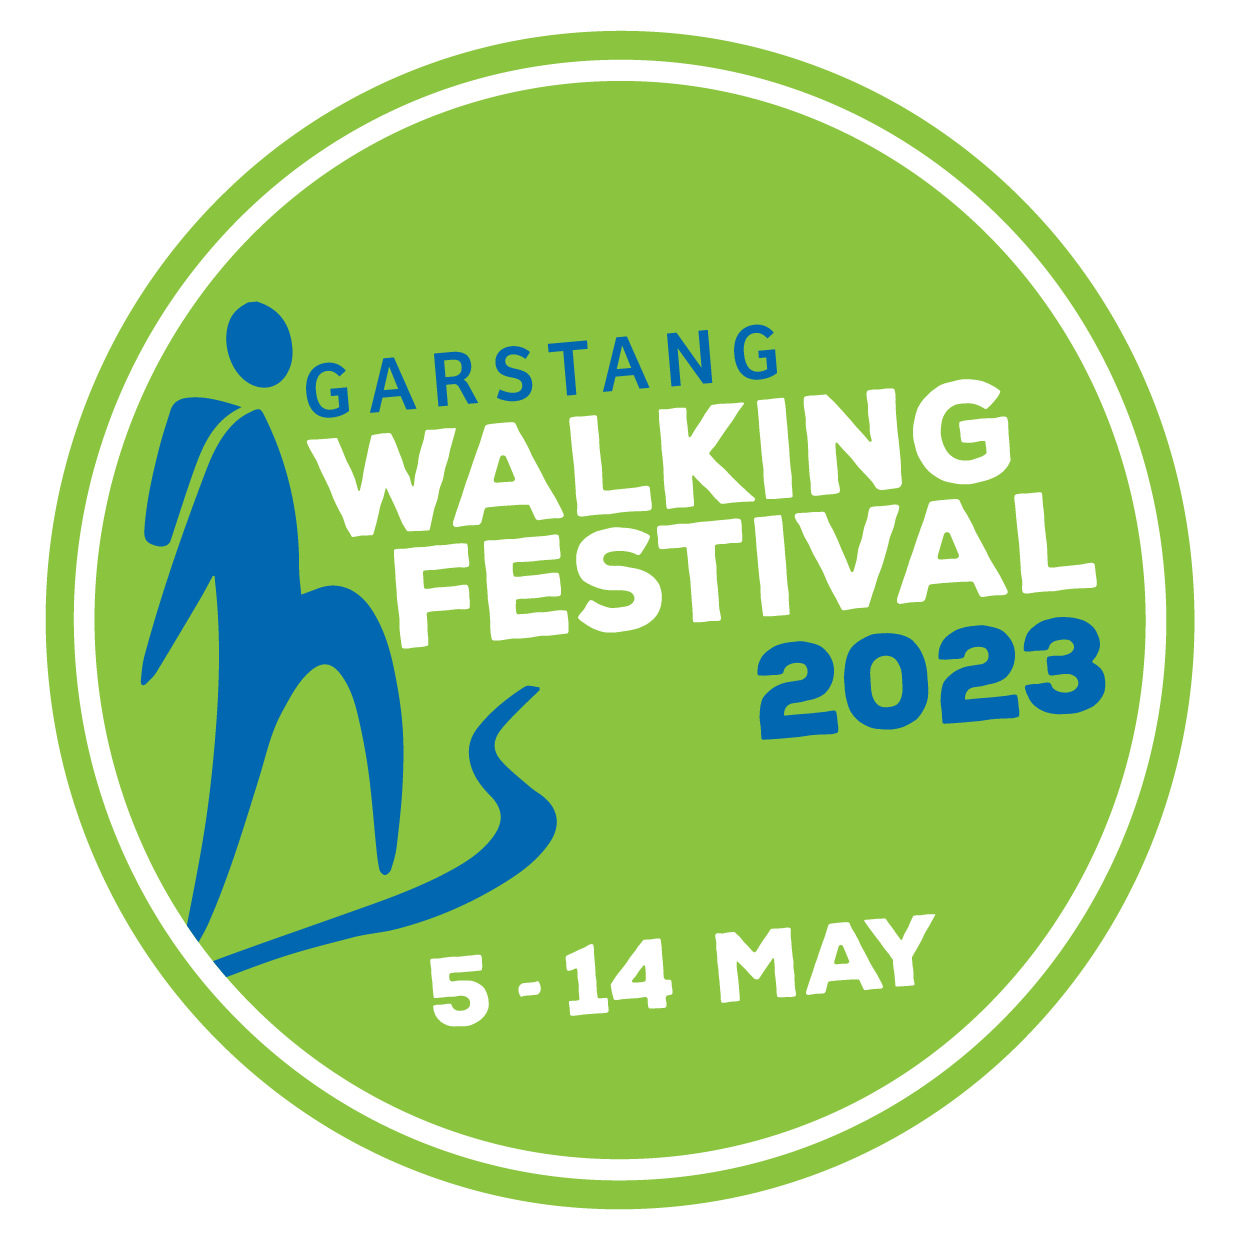 Garstang Walking Festival 2023 logo